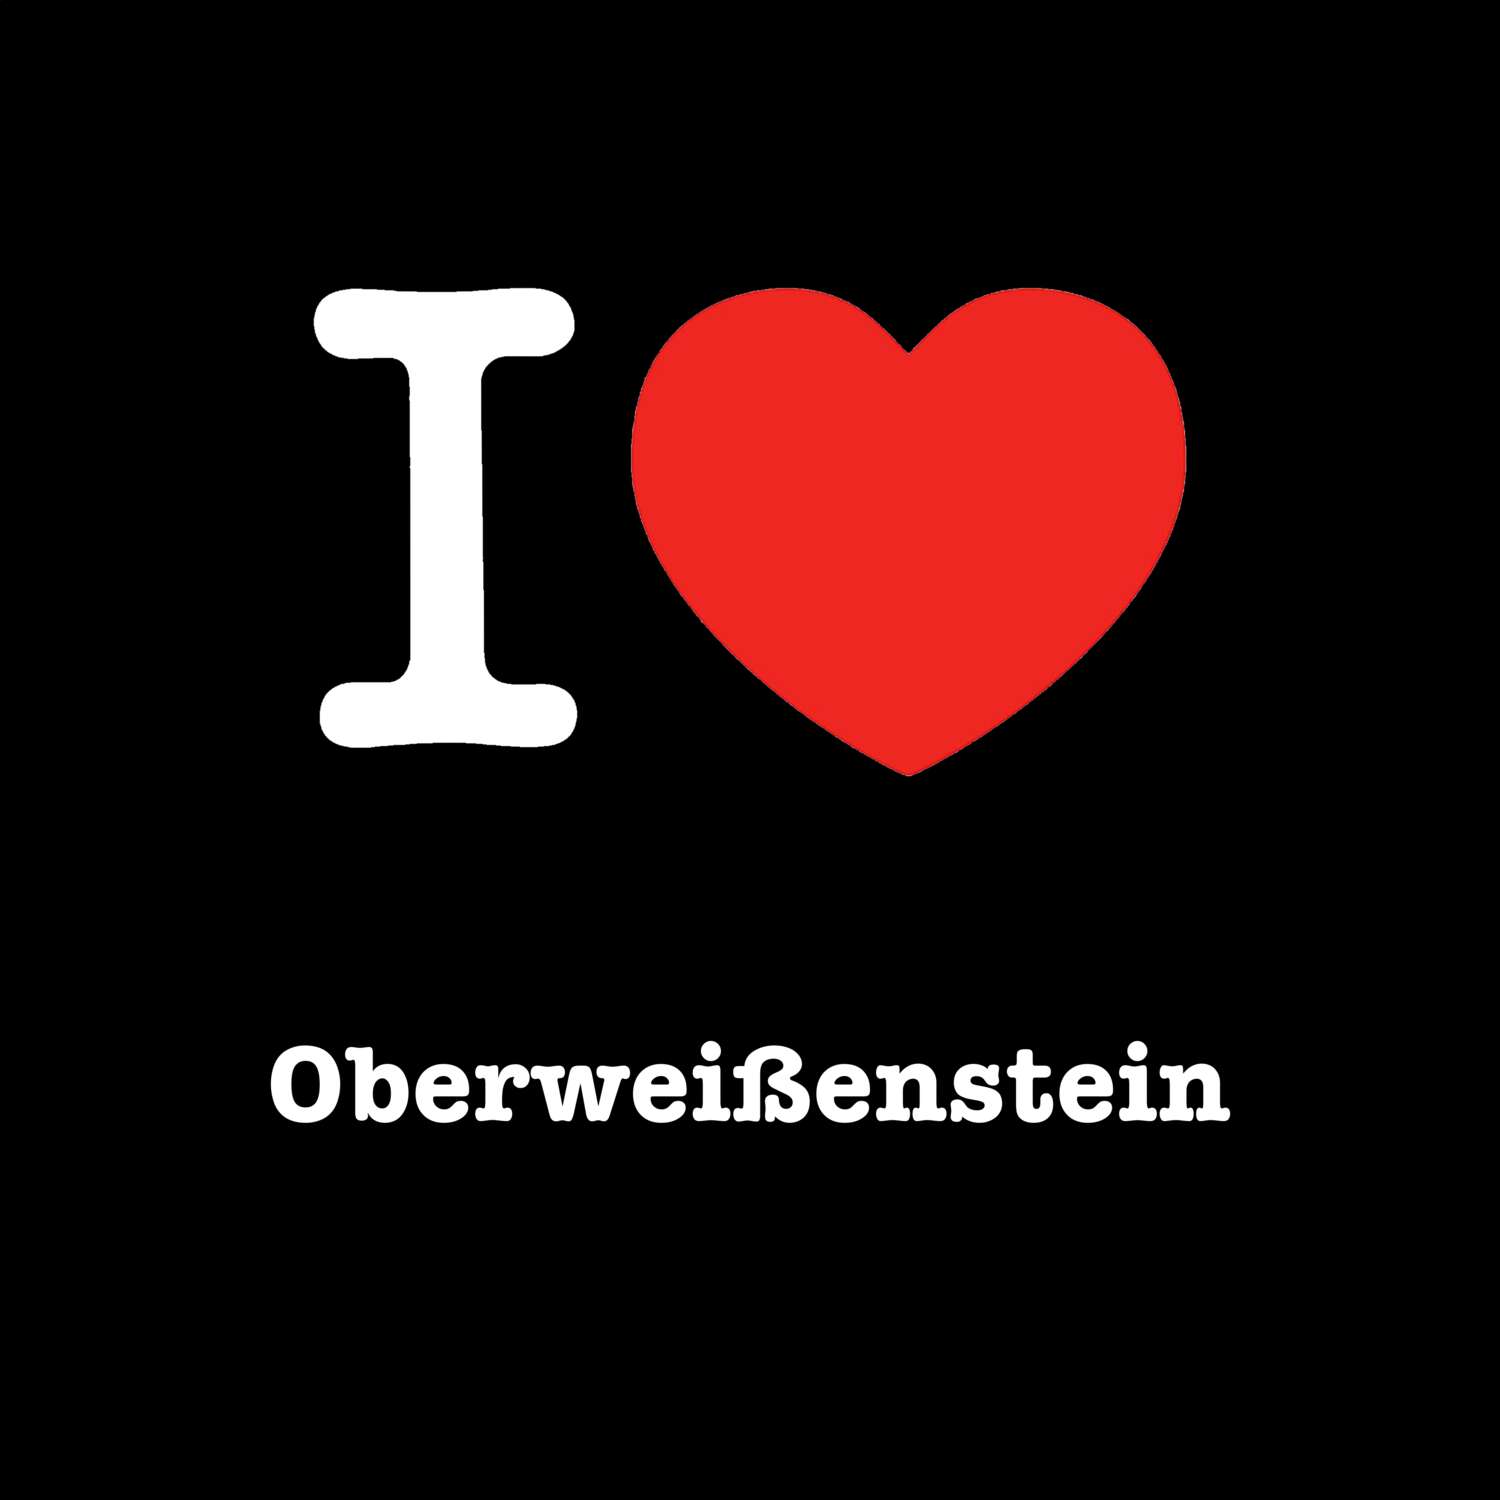 Oberweißenstein T-Shirt »I love«